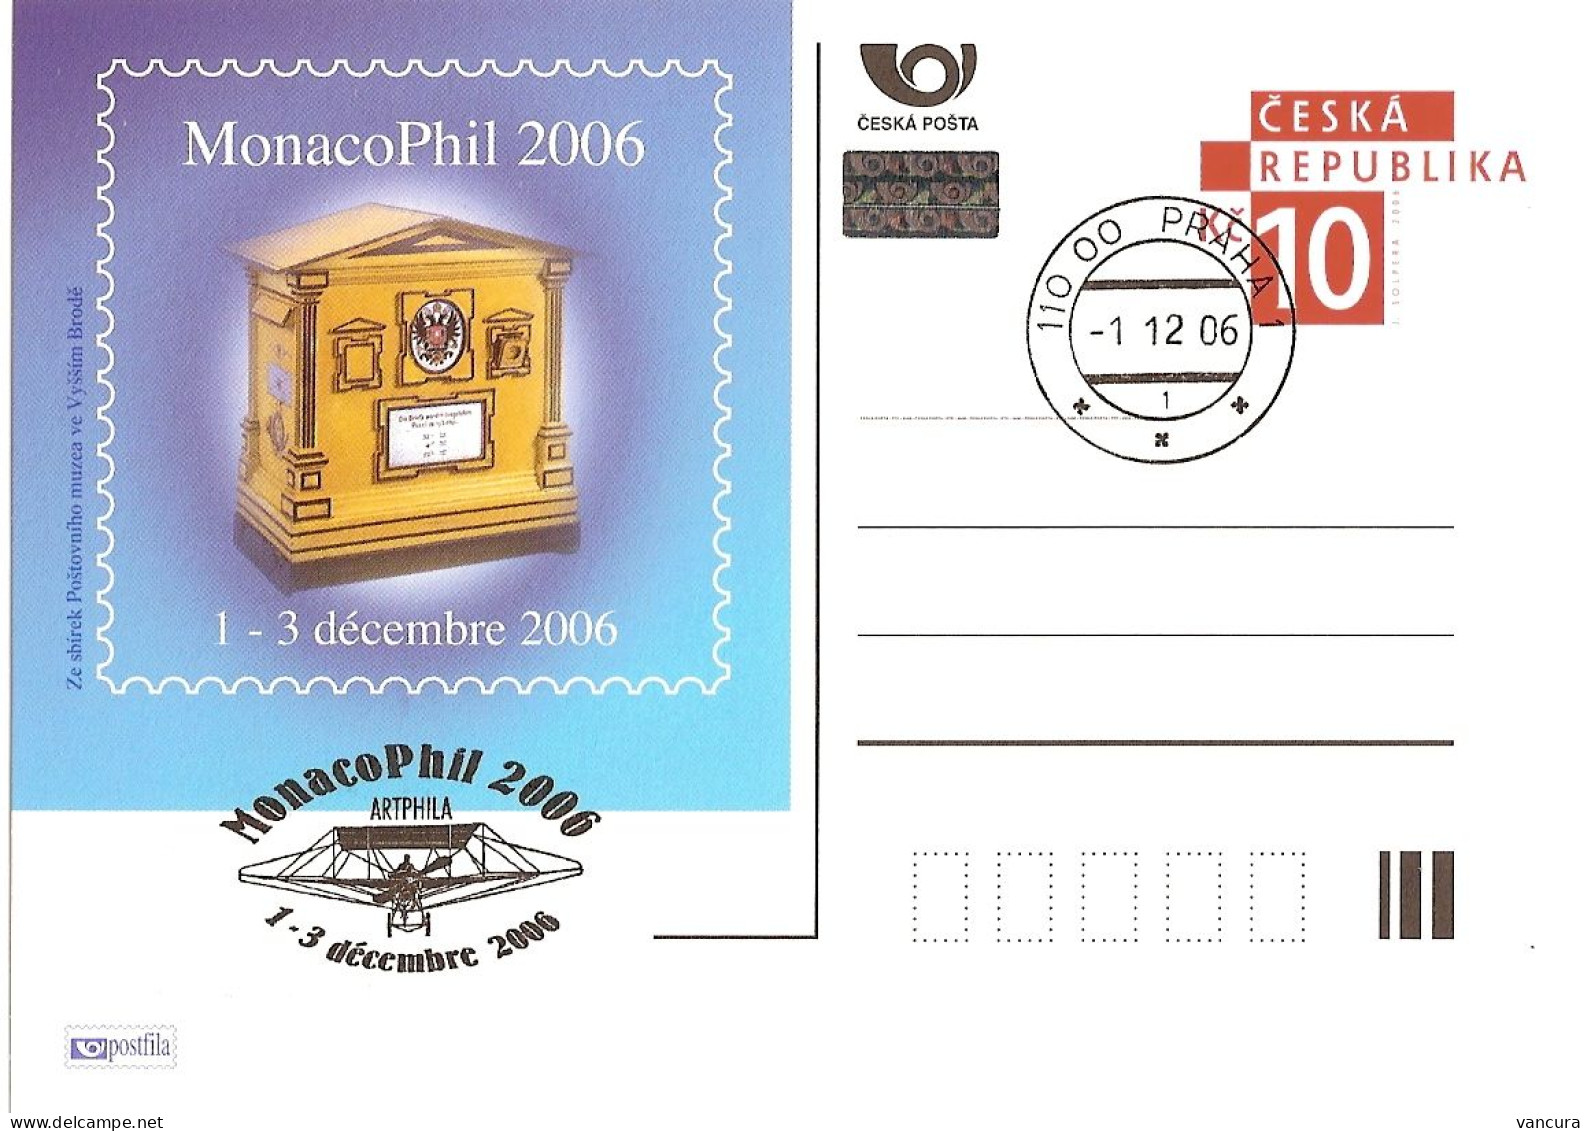 CDV A 140 Czech Republic MonacoPhil 2006 Mailbox - Ansichtskarten